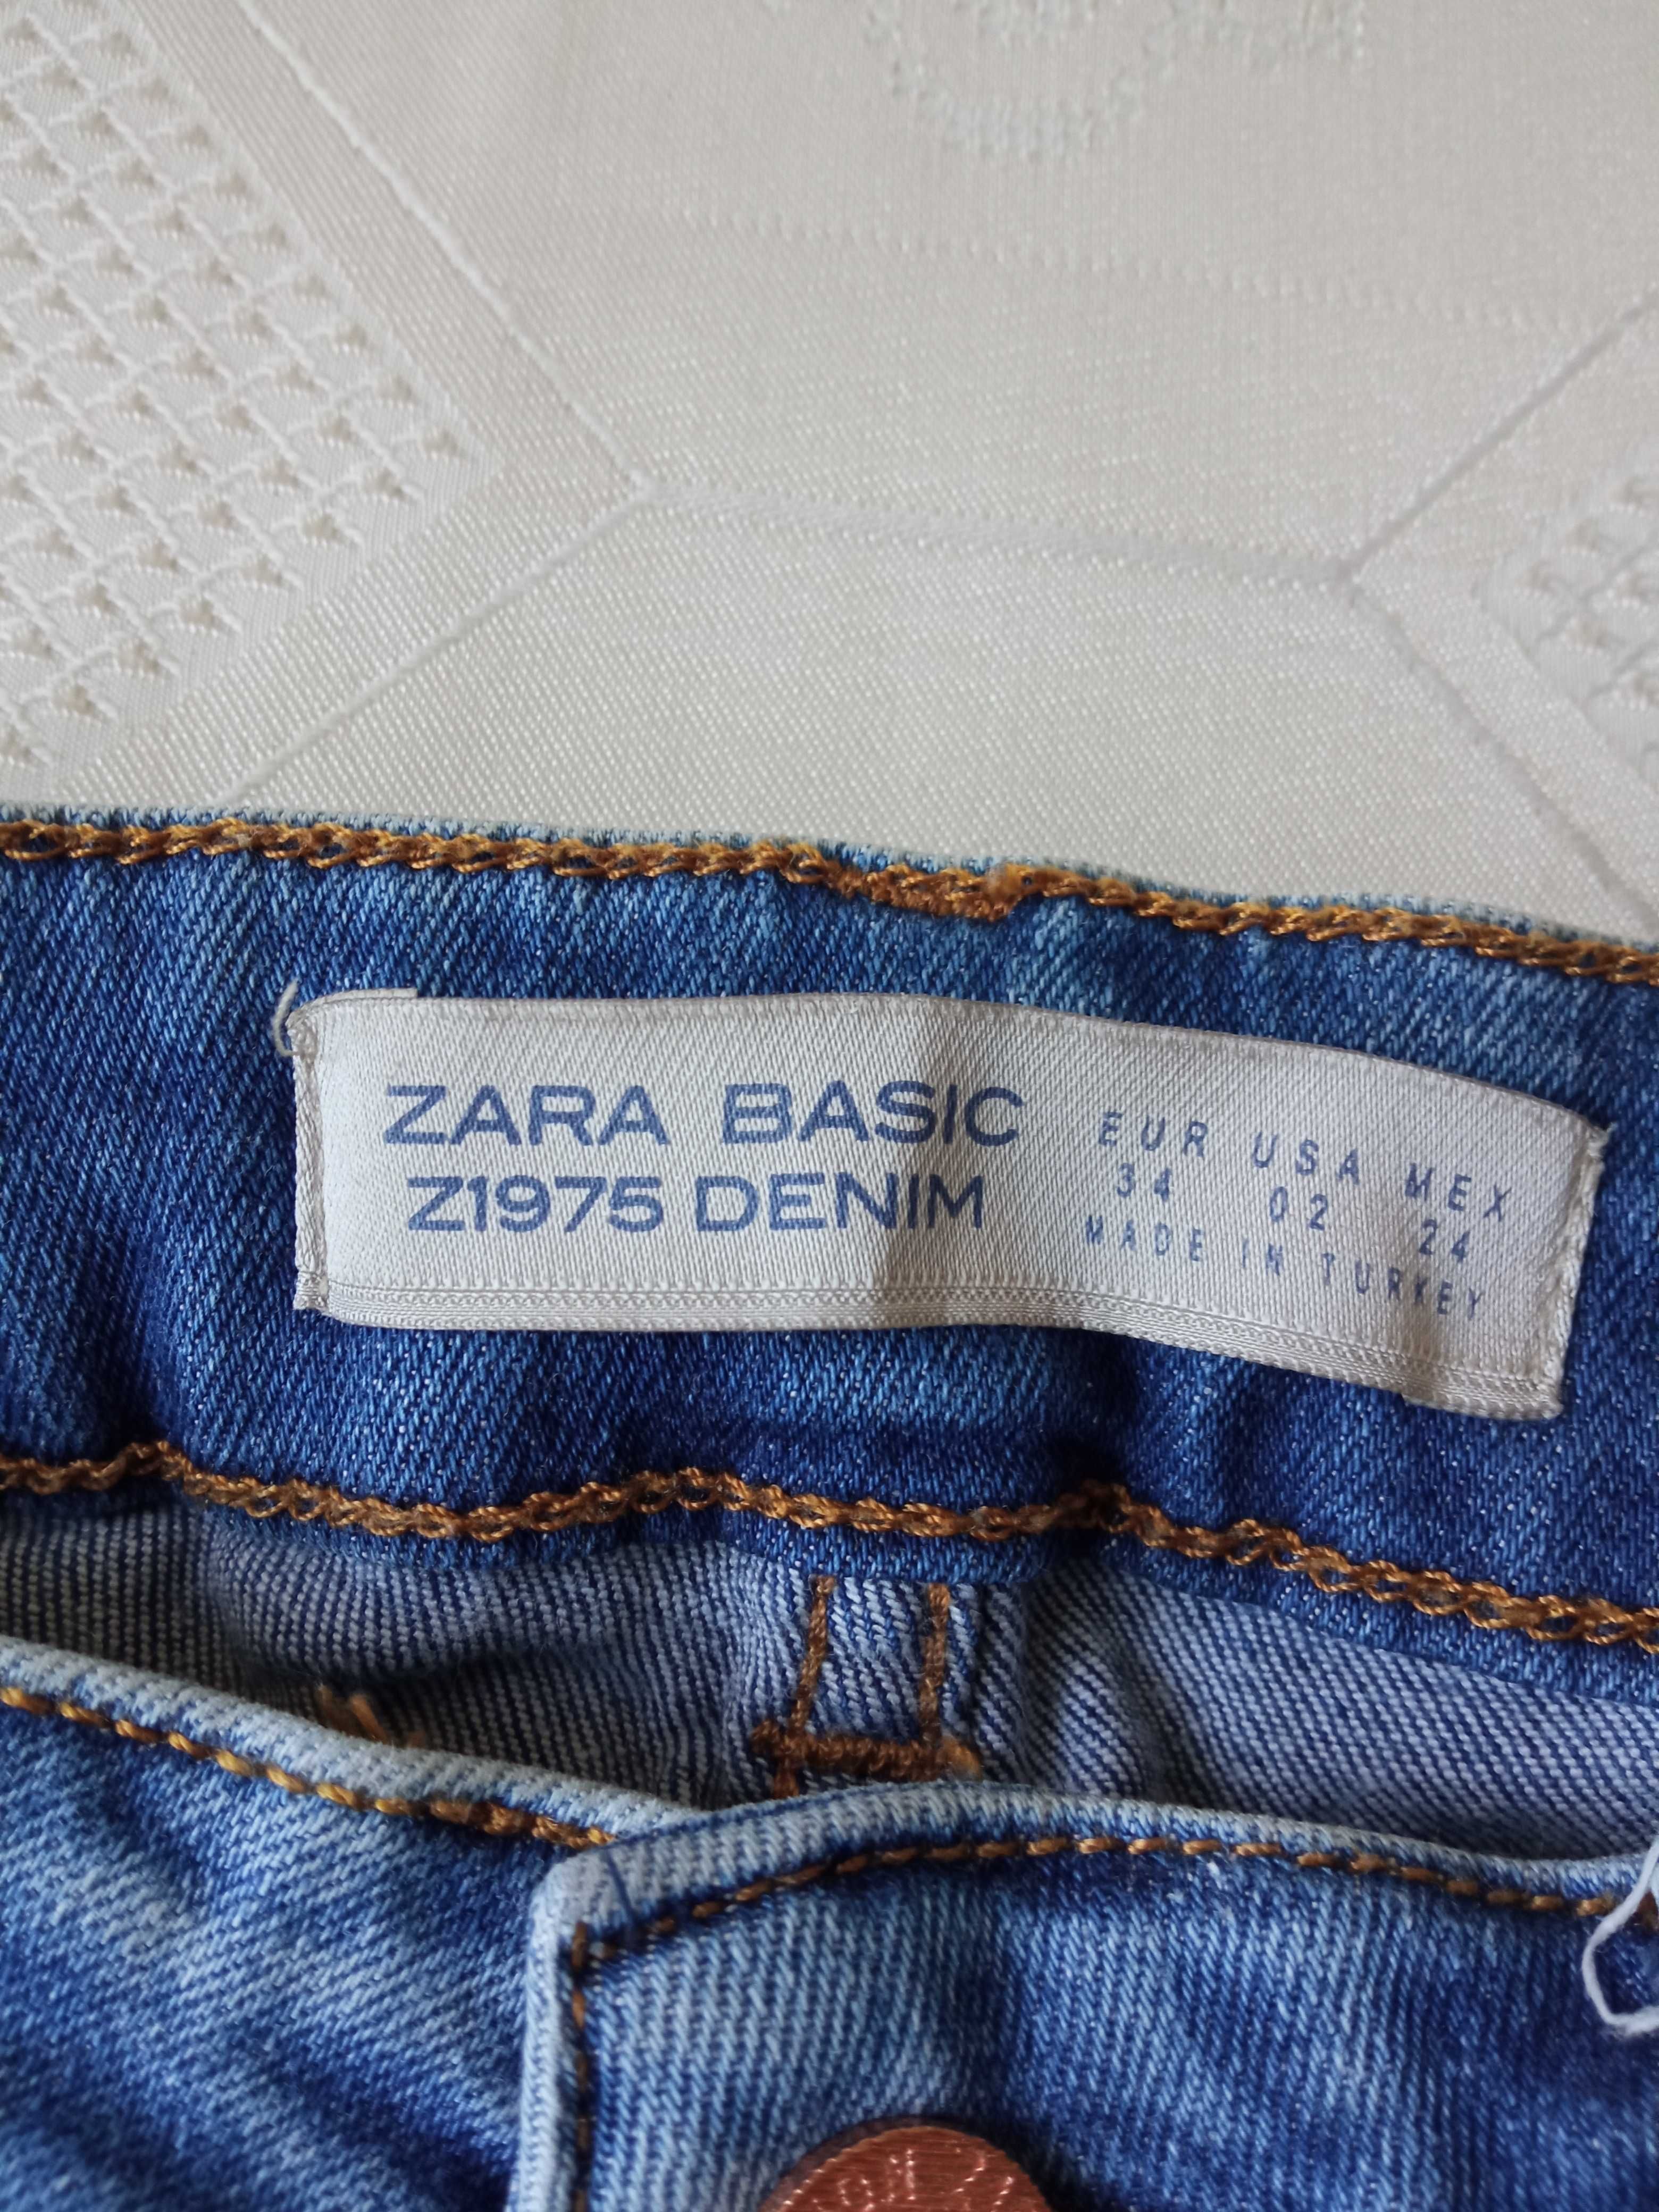 Zara Basic spodnie jeans rurki r 34 pas 60-68cm